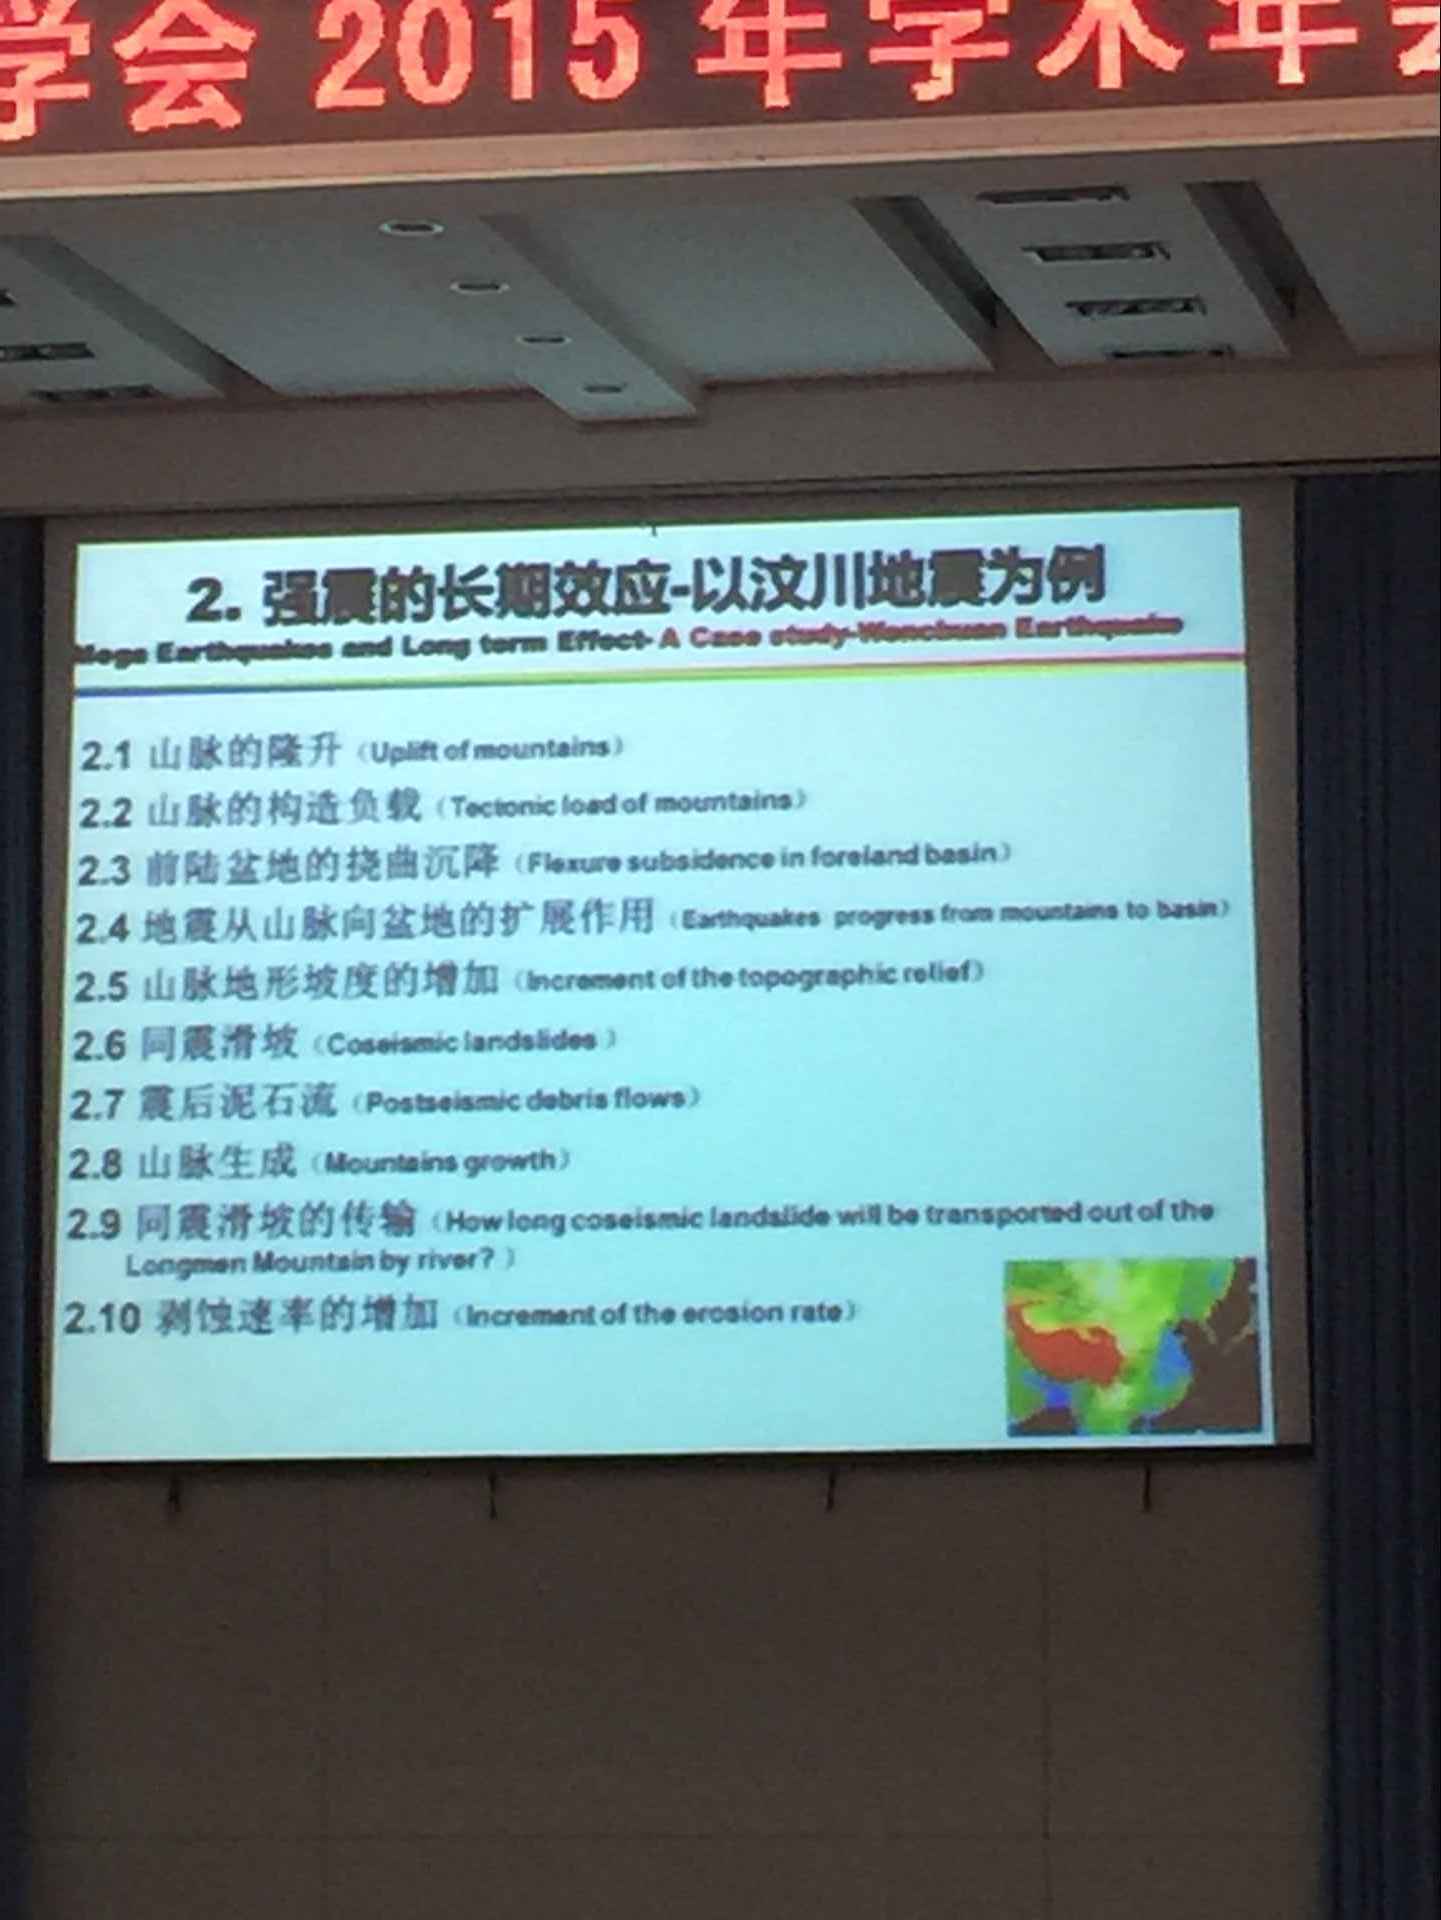 四川省地理学会2015年学术年会